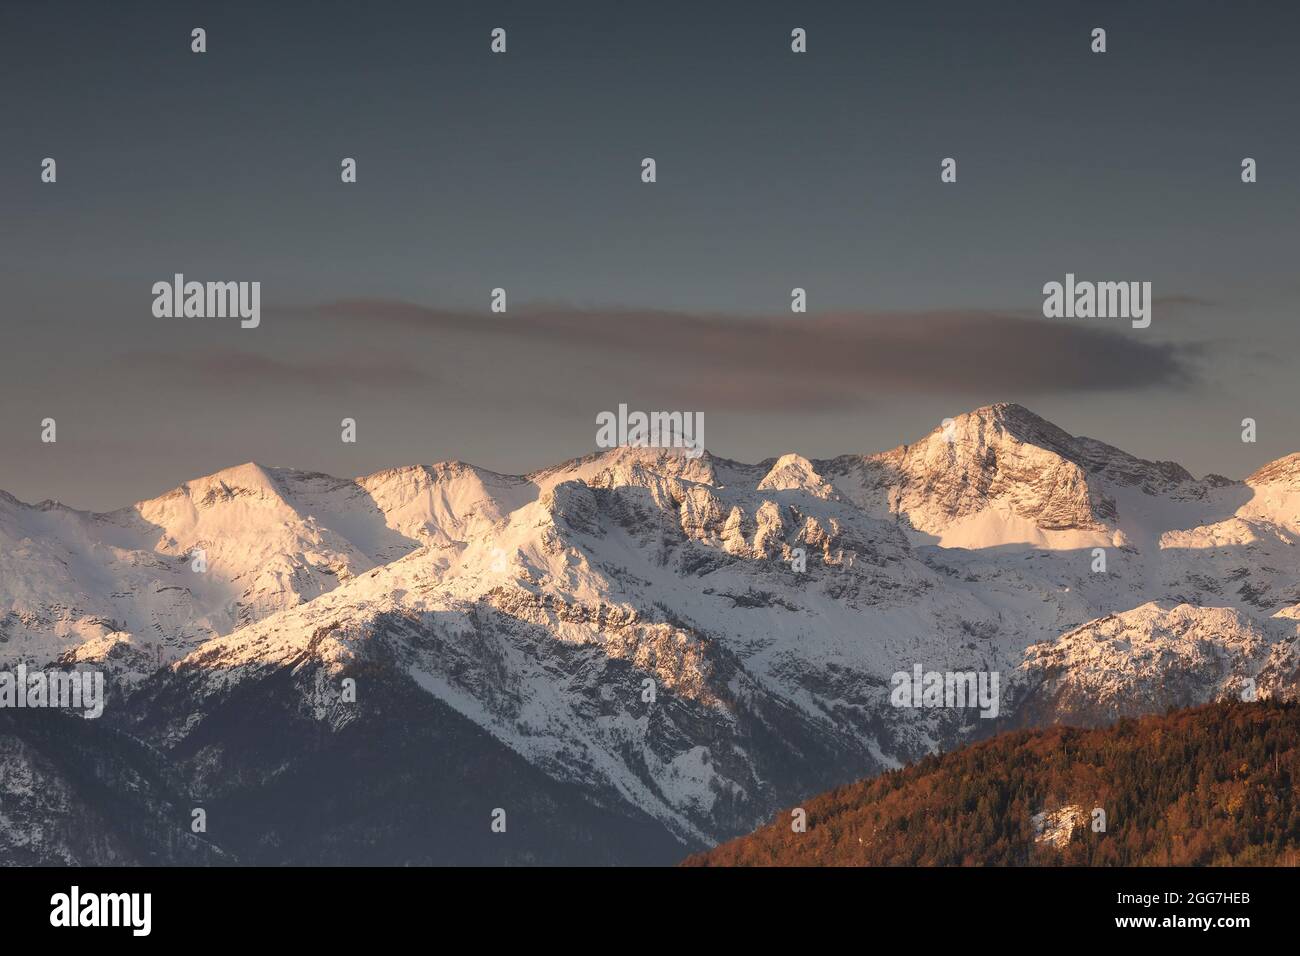 mountain peaks in winter at sunrise, Slovenia Stock Photo